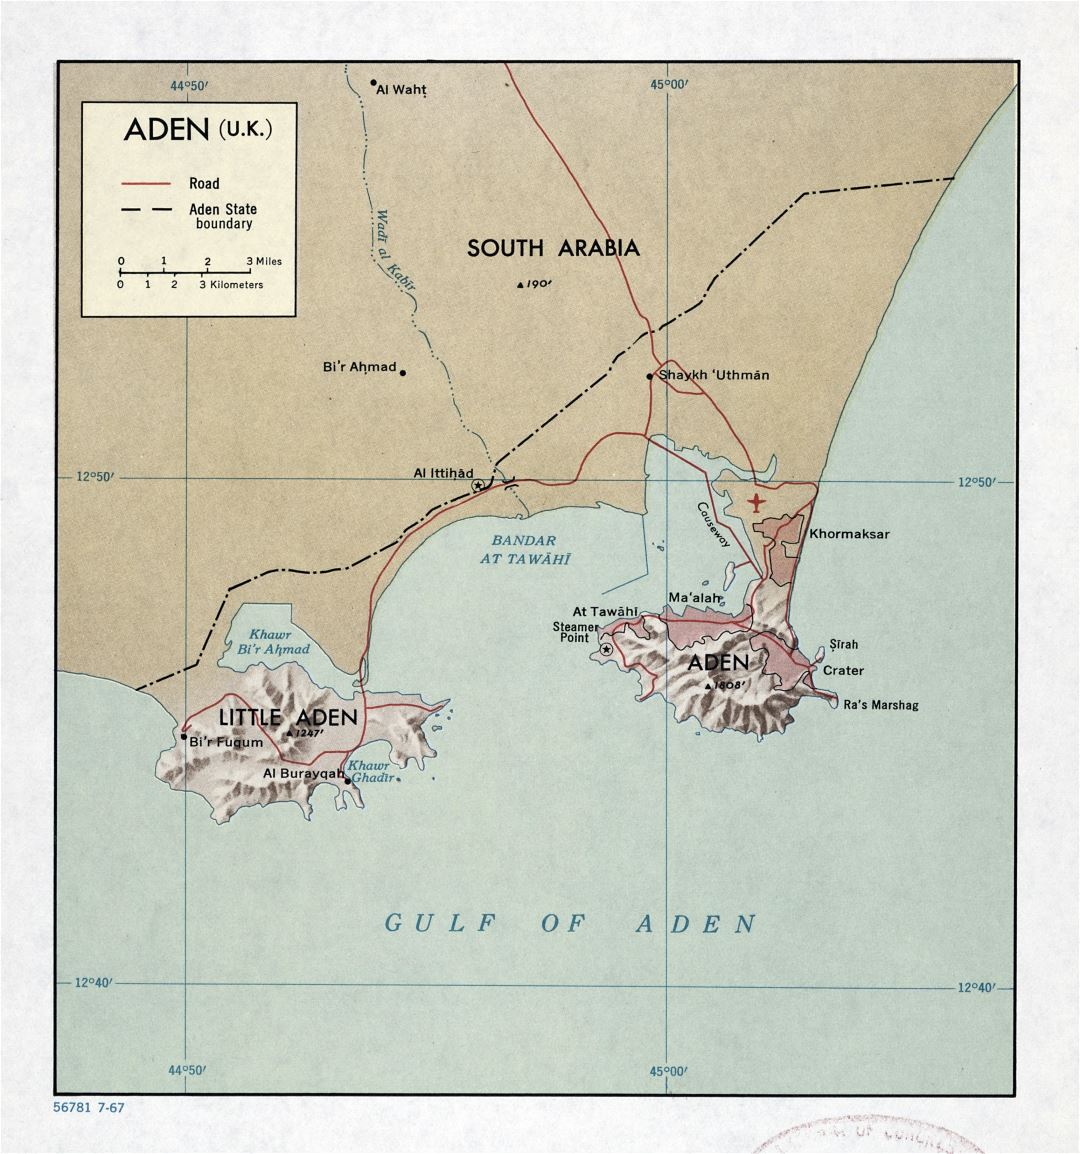 Grande detallado mapa de Adén (Reino Unido) con relieve y carreteras - 1967